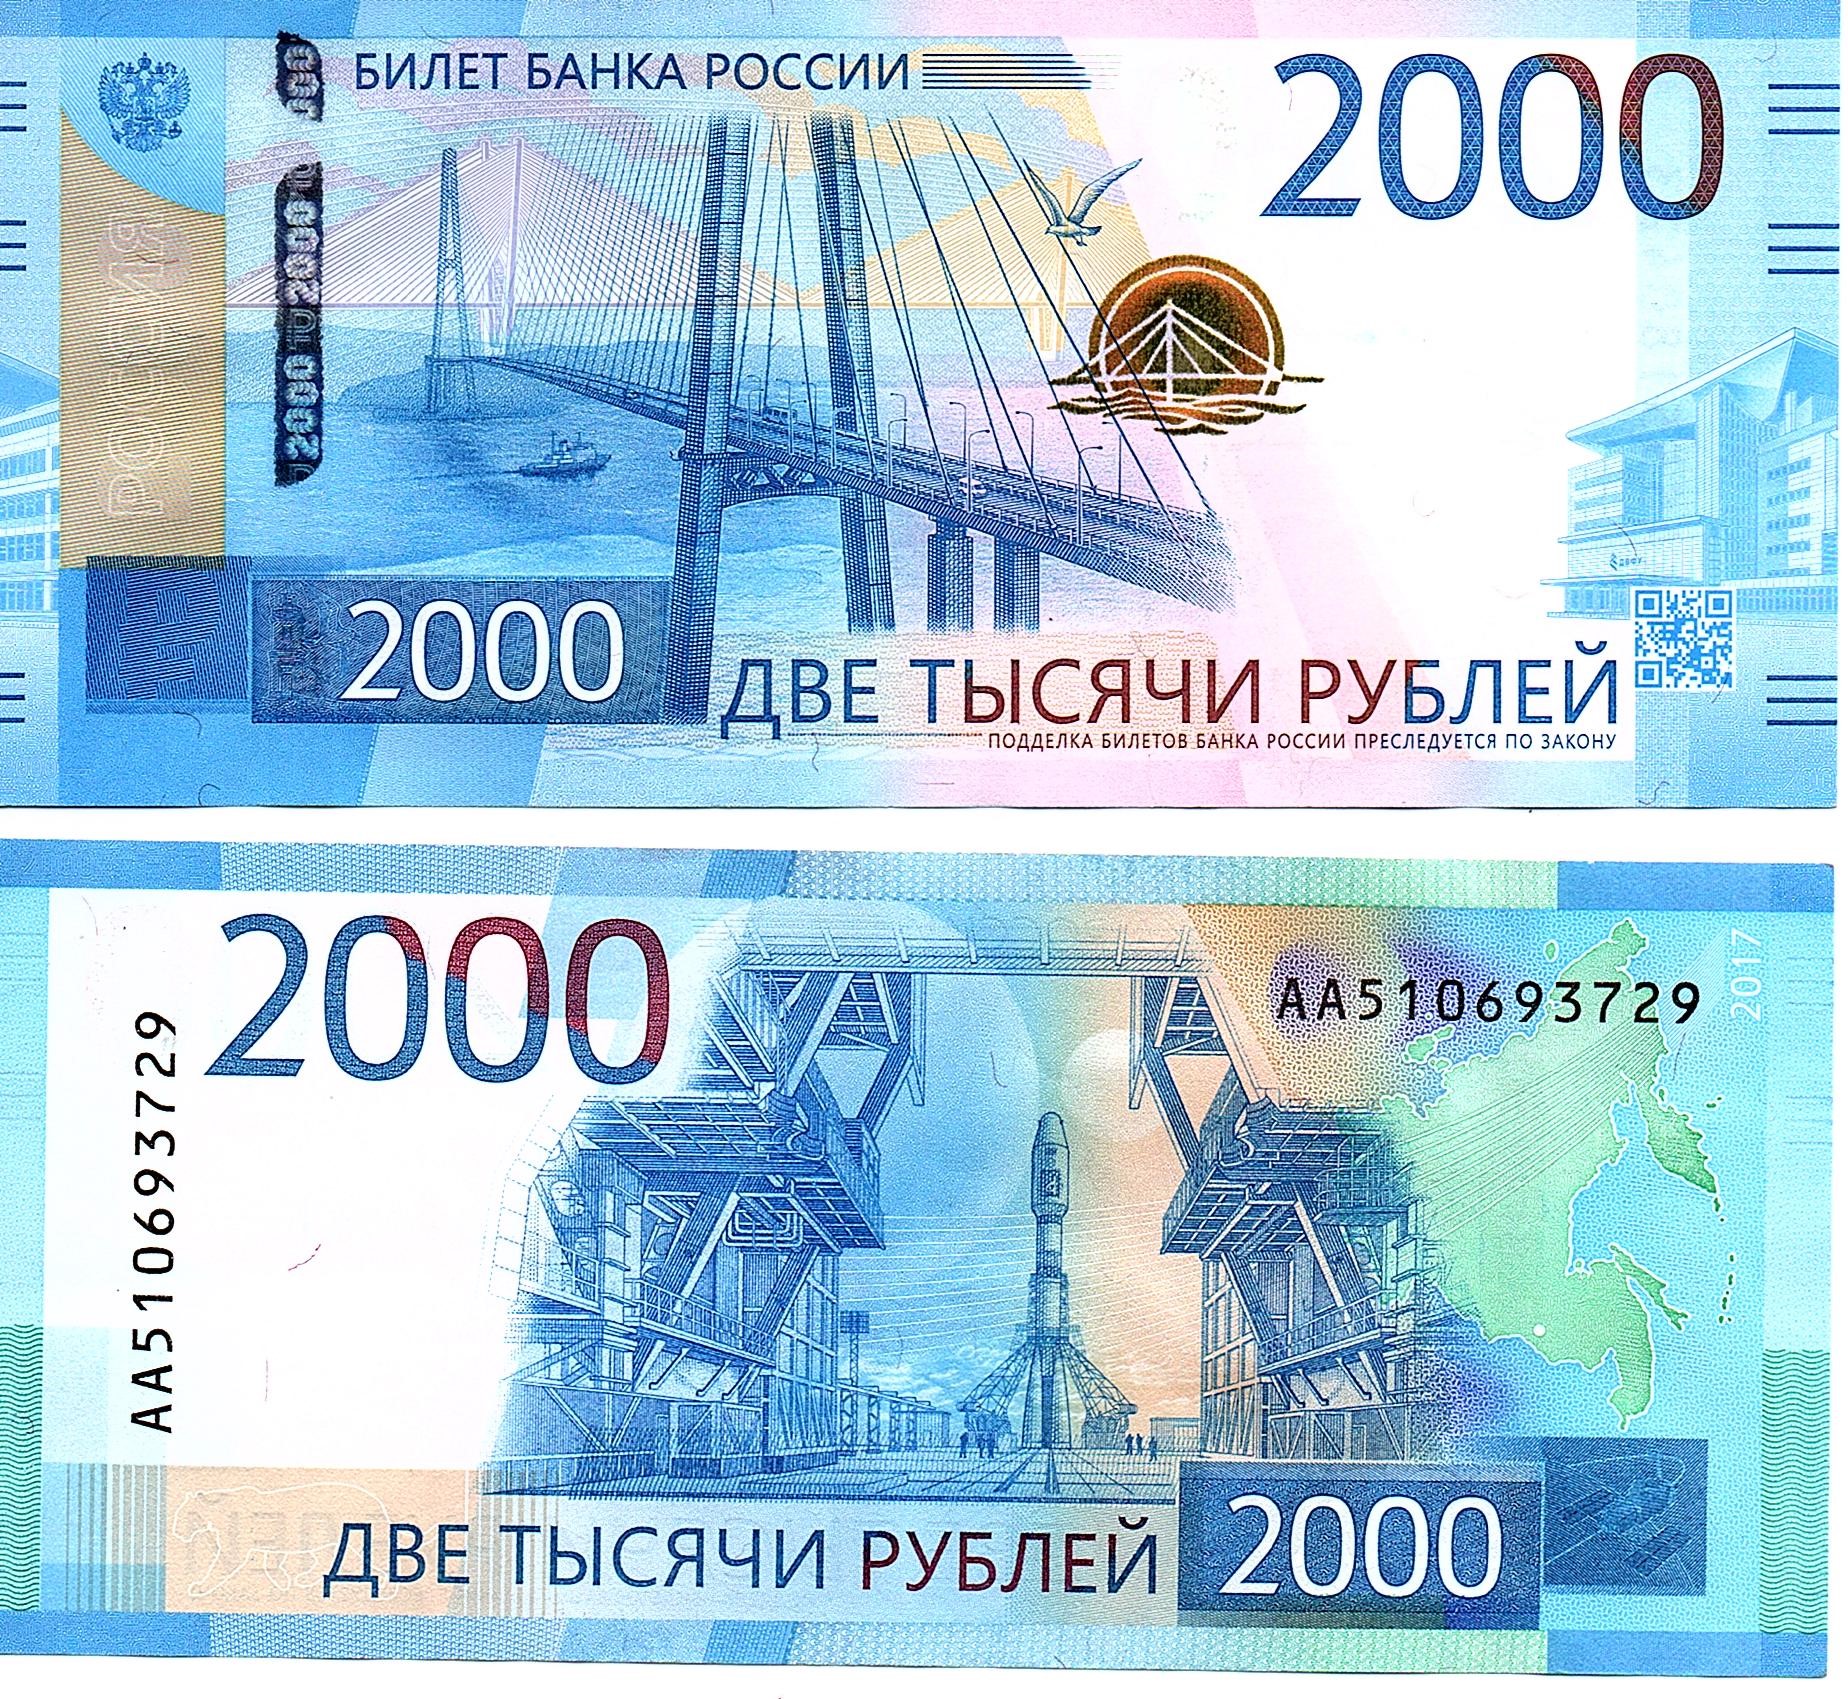 Russia #279  2000 Rubley